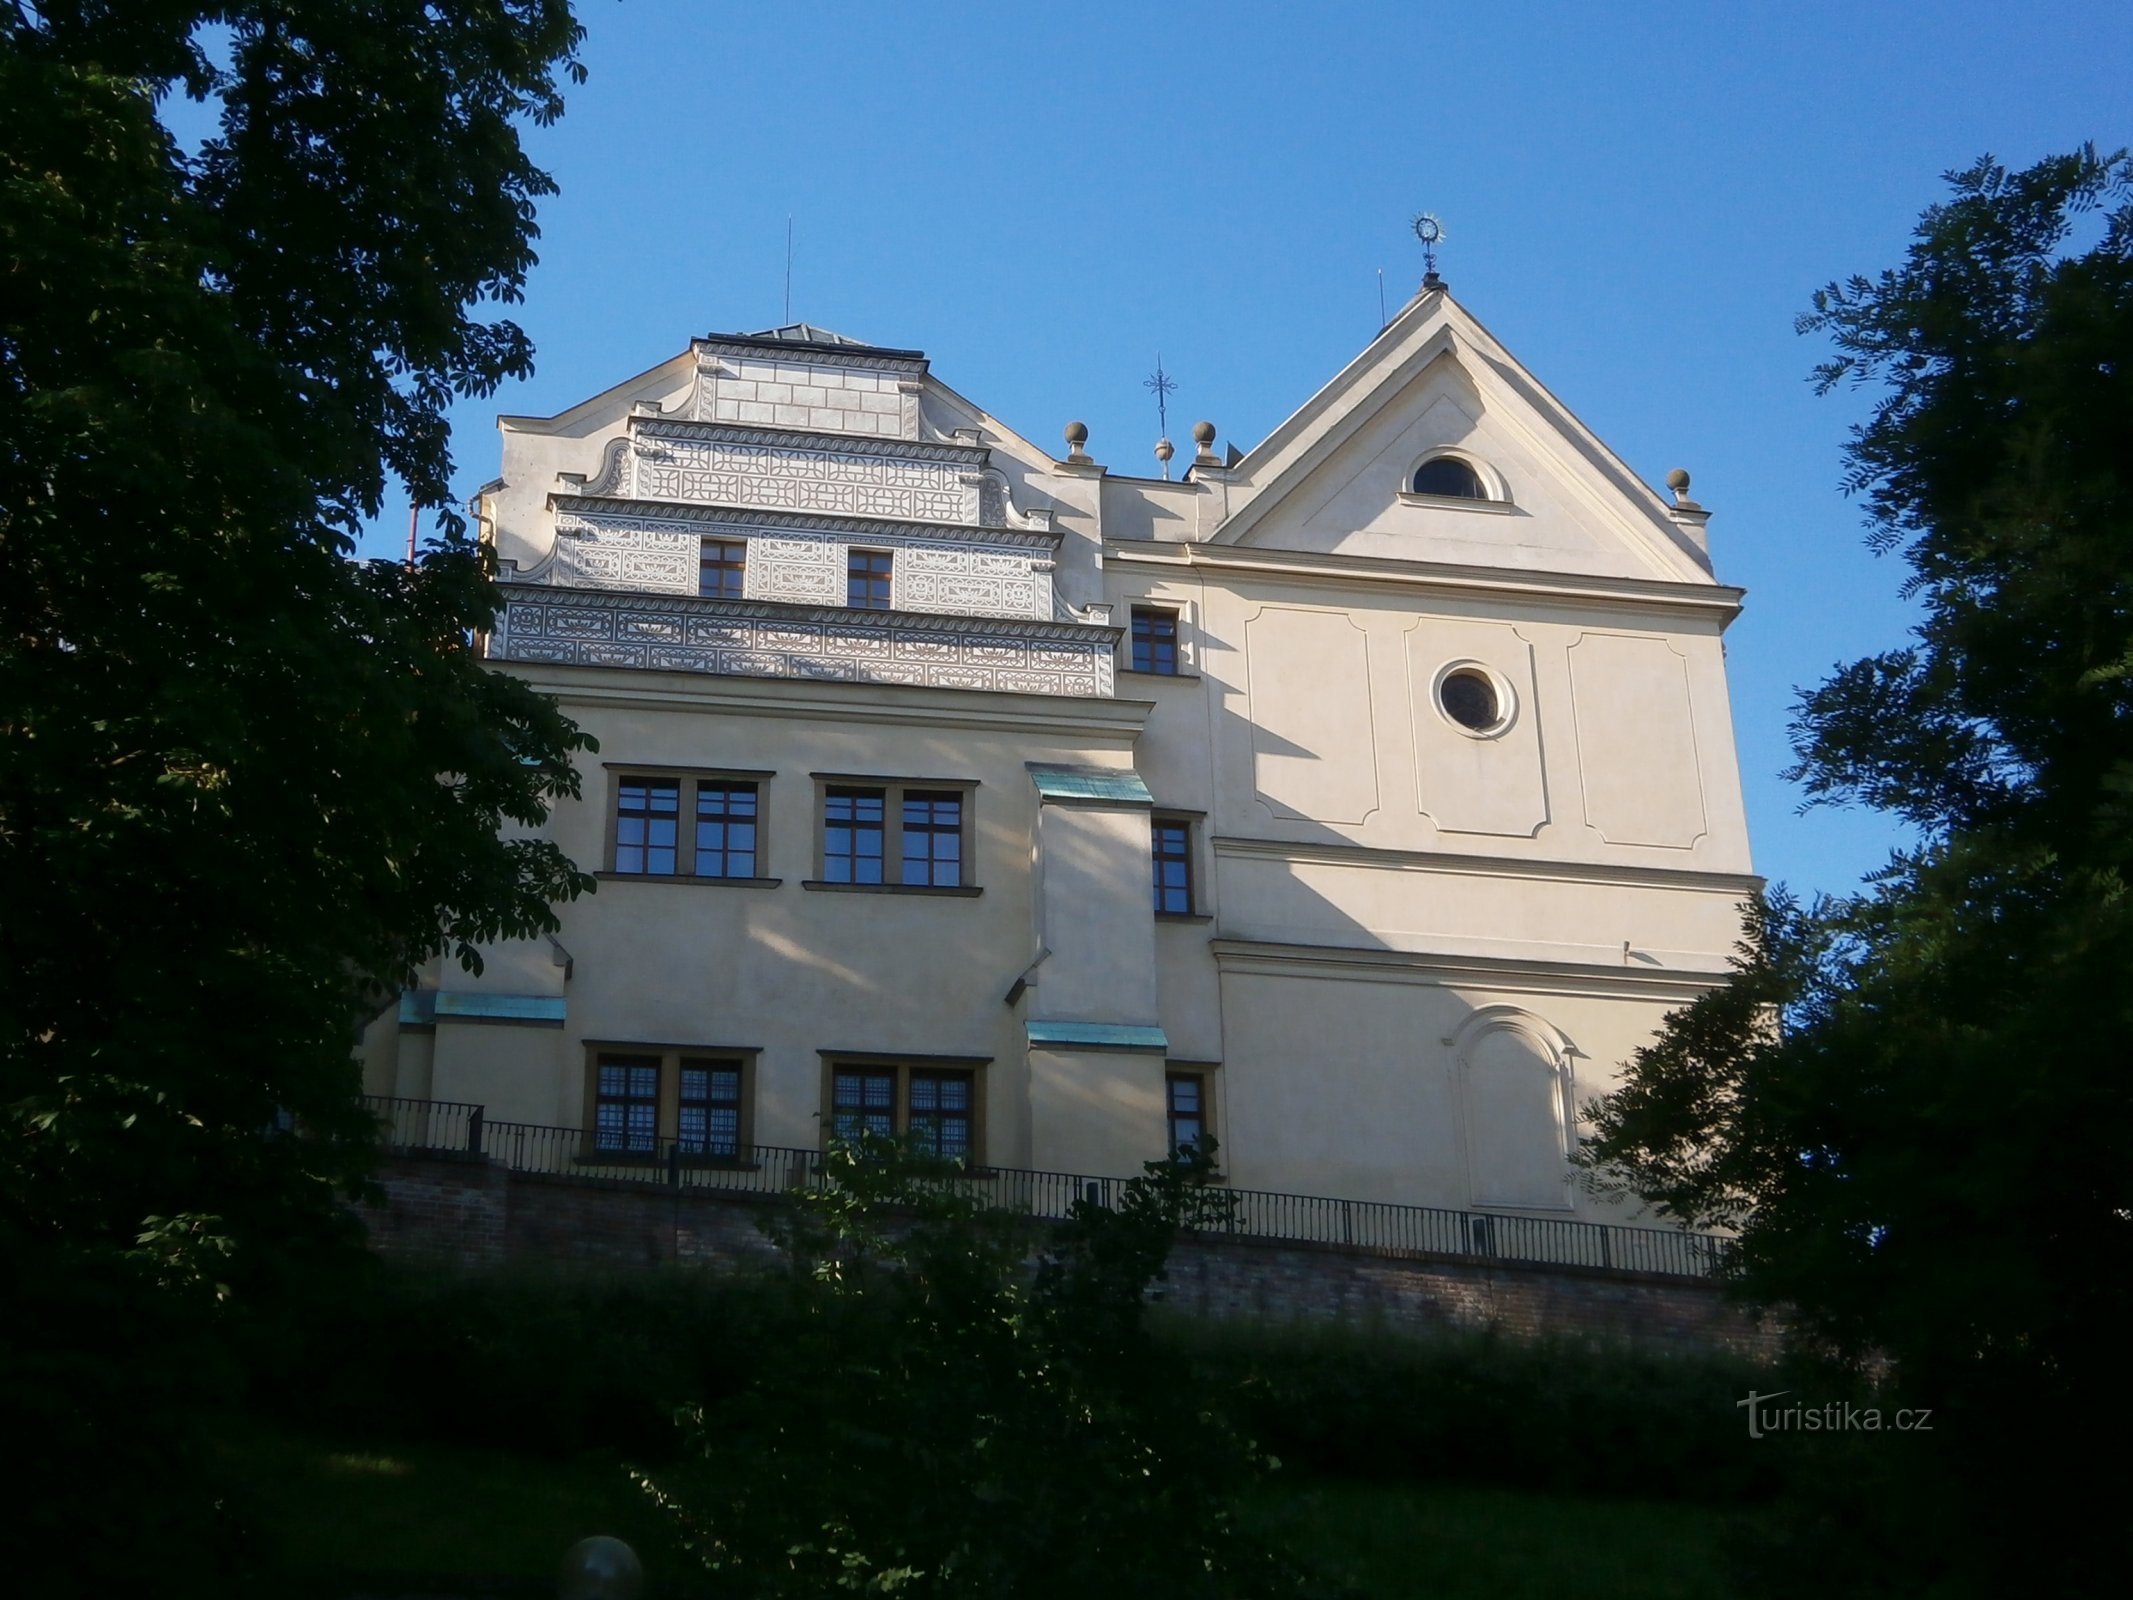 Burgraven talo St. Johannes Nepomuck (Hradec Králové, 2.7.2016. heinäkuuta XNUMX)